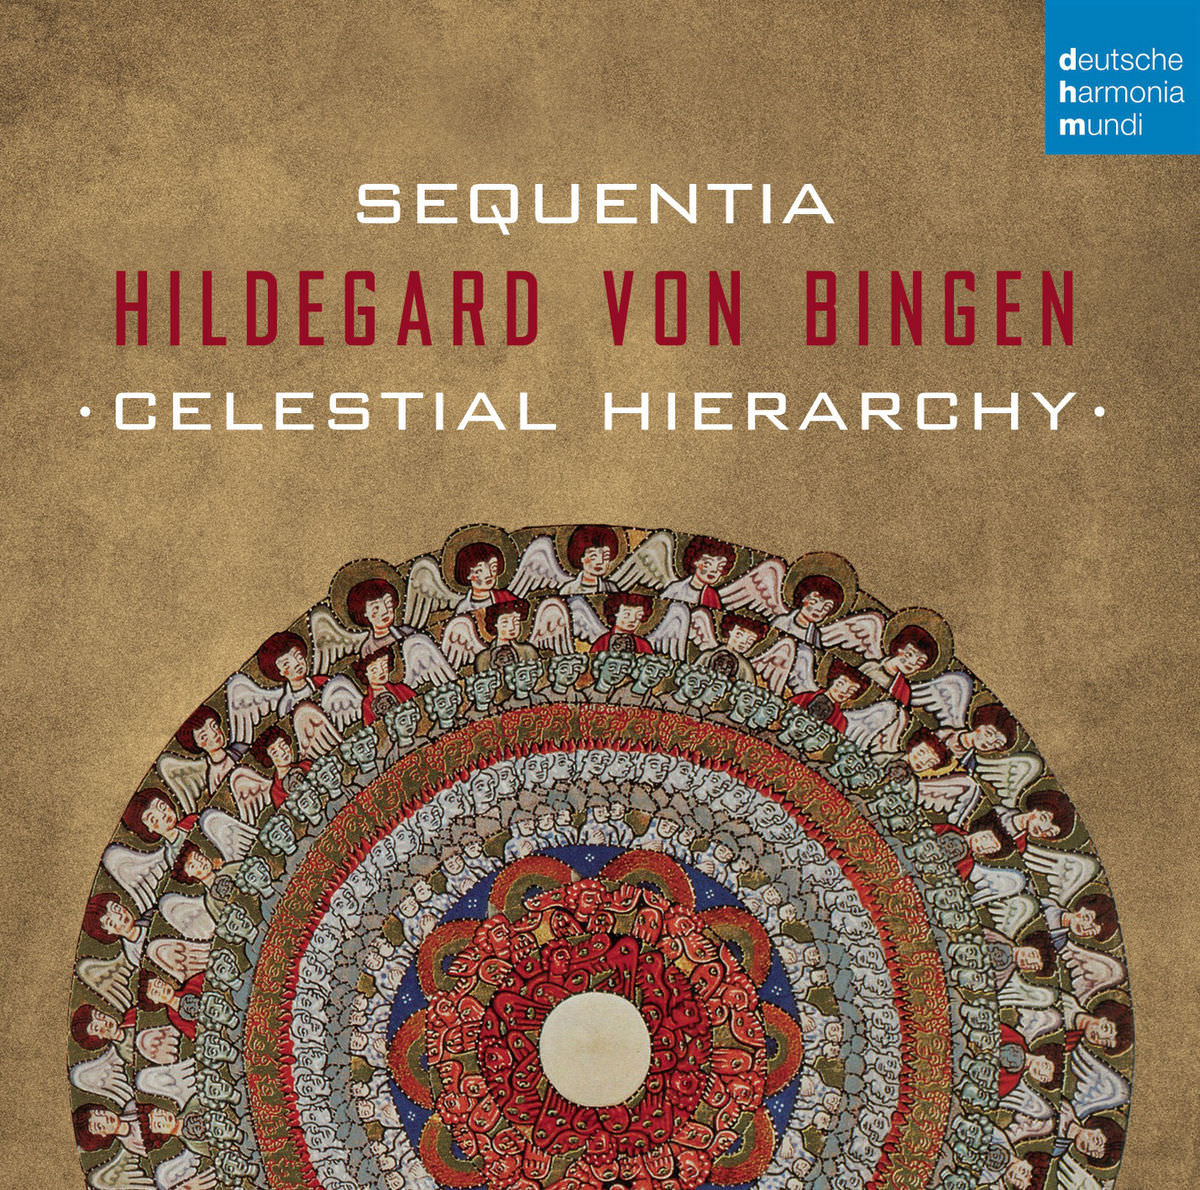 Sequentia - Hildegard von Bingen - Celestial Hierarchy (2015) [Qobuz FLAC 24bit/96kHz]